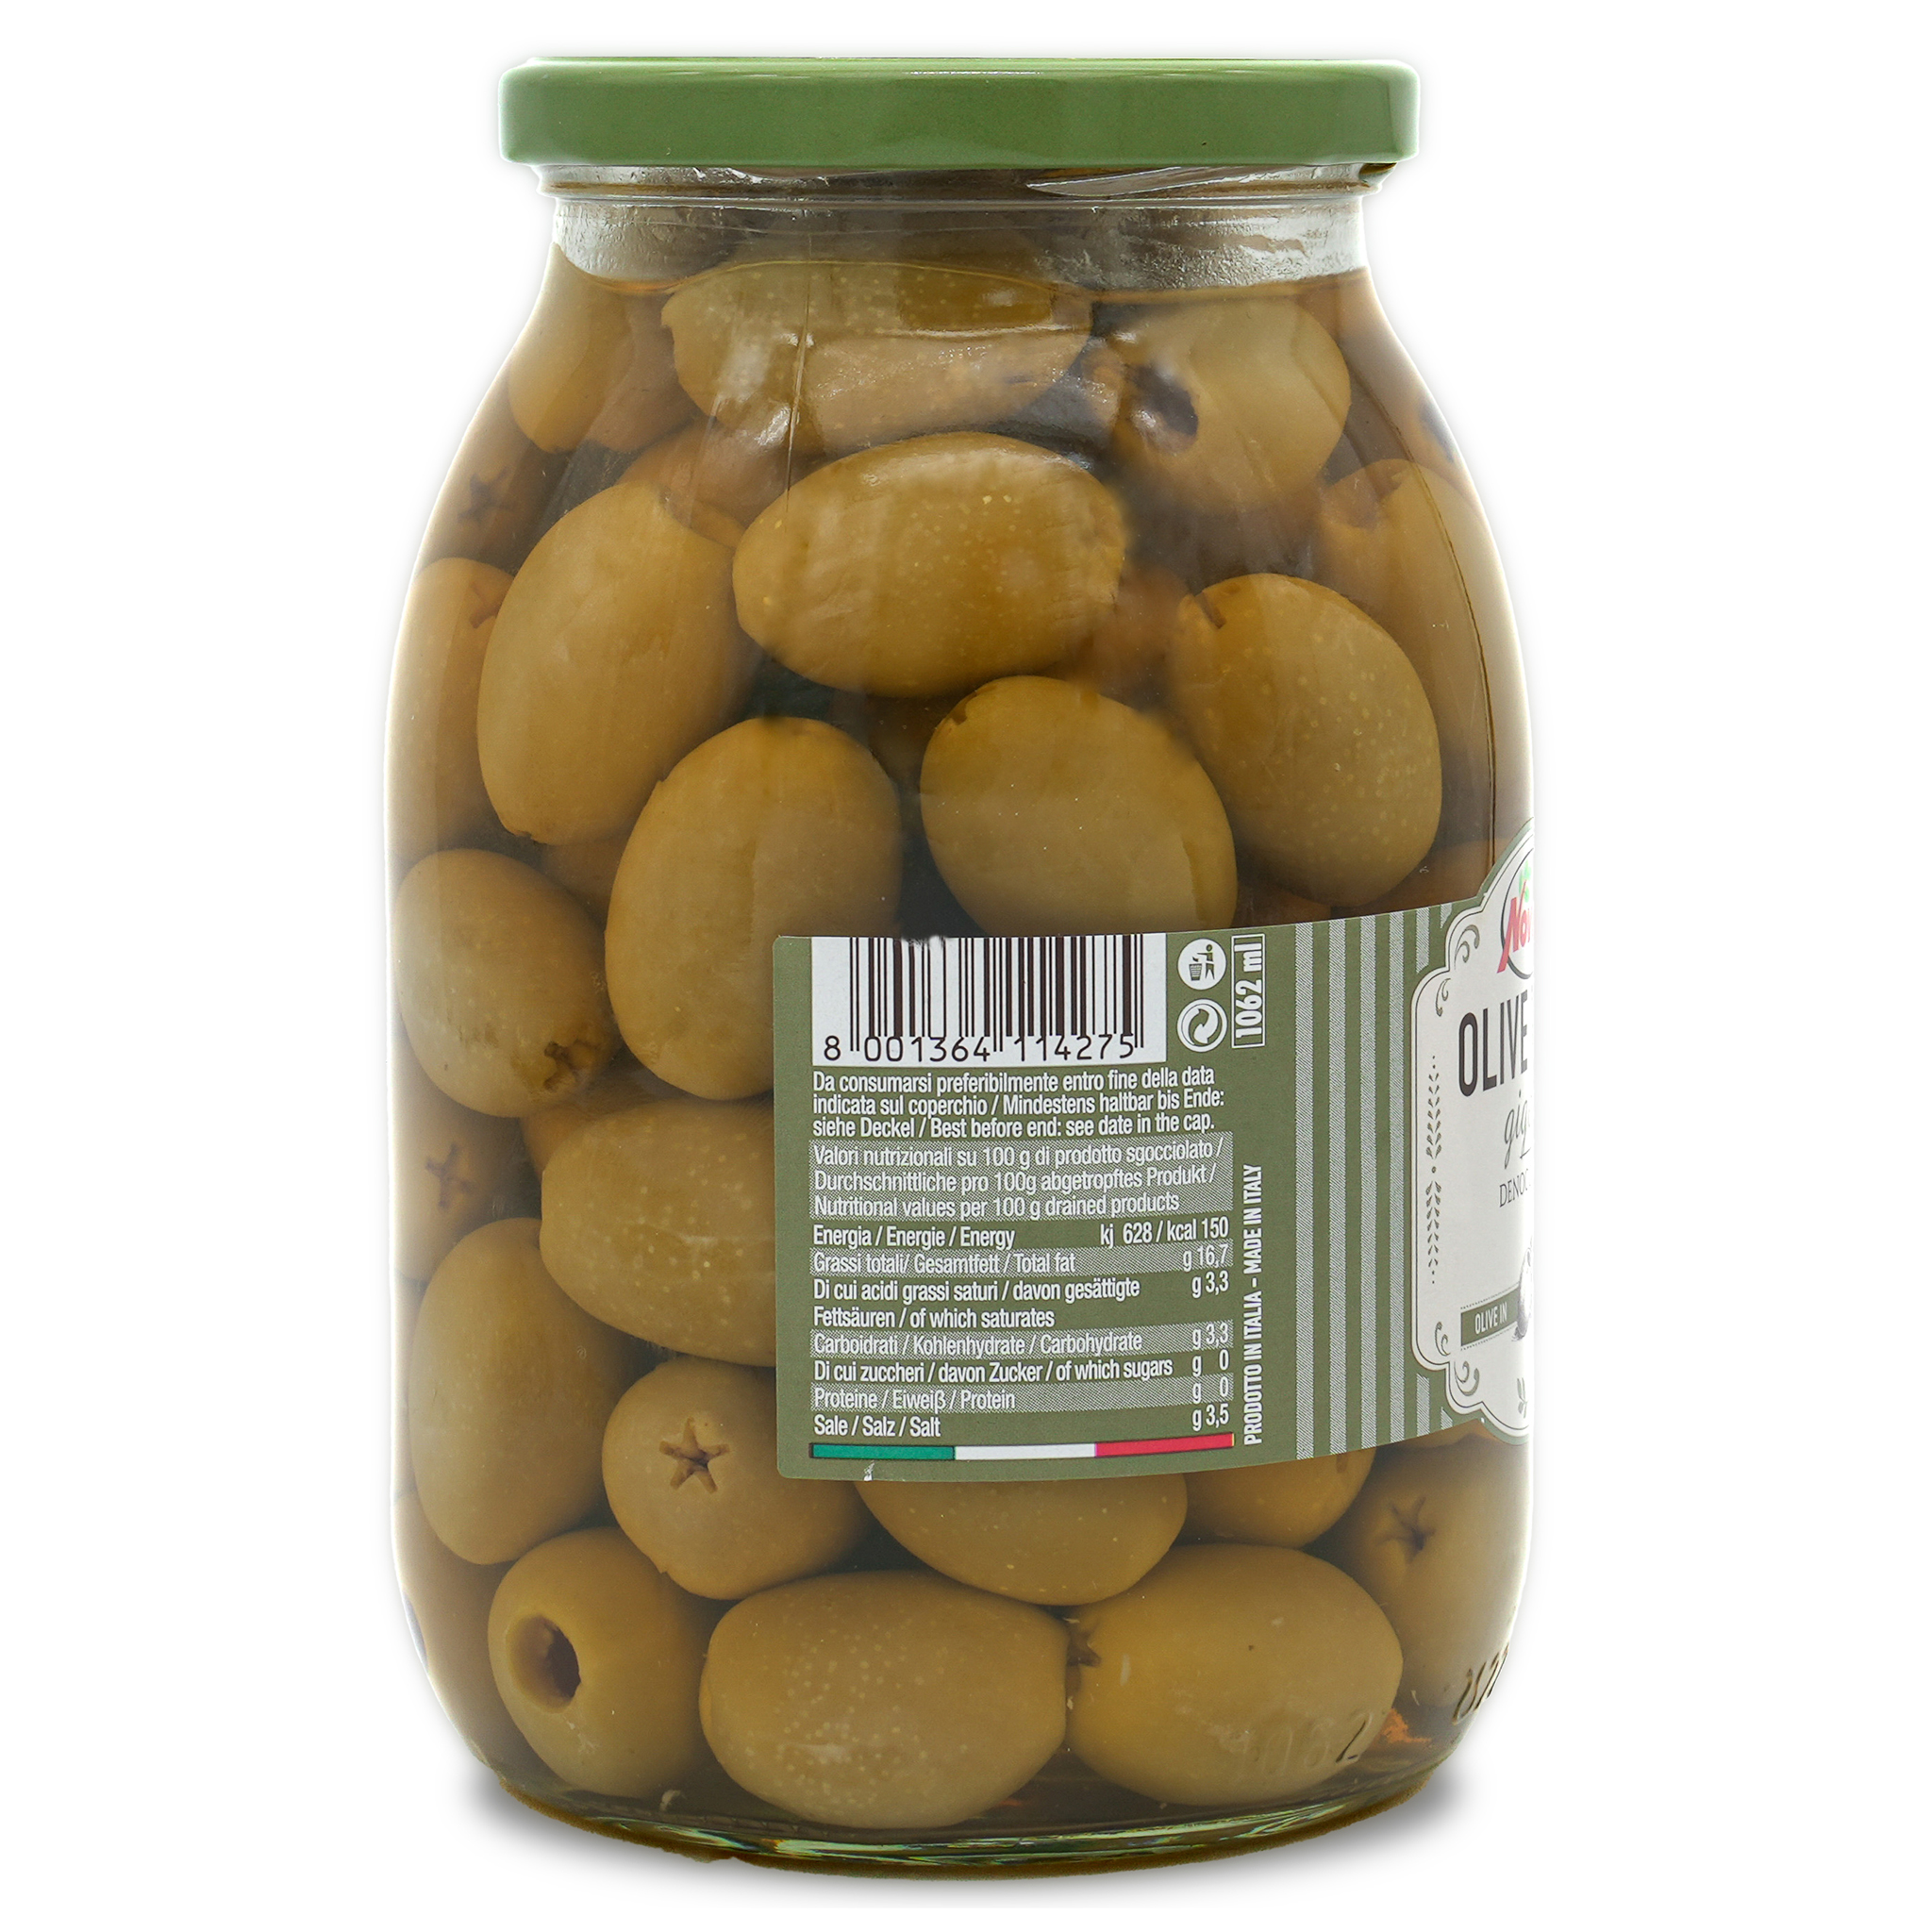 Grüne Oliven Gigant | Novella | ohne Stein | Olive Verdi giganti | 560g | aus Italien